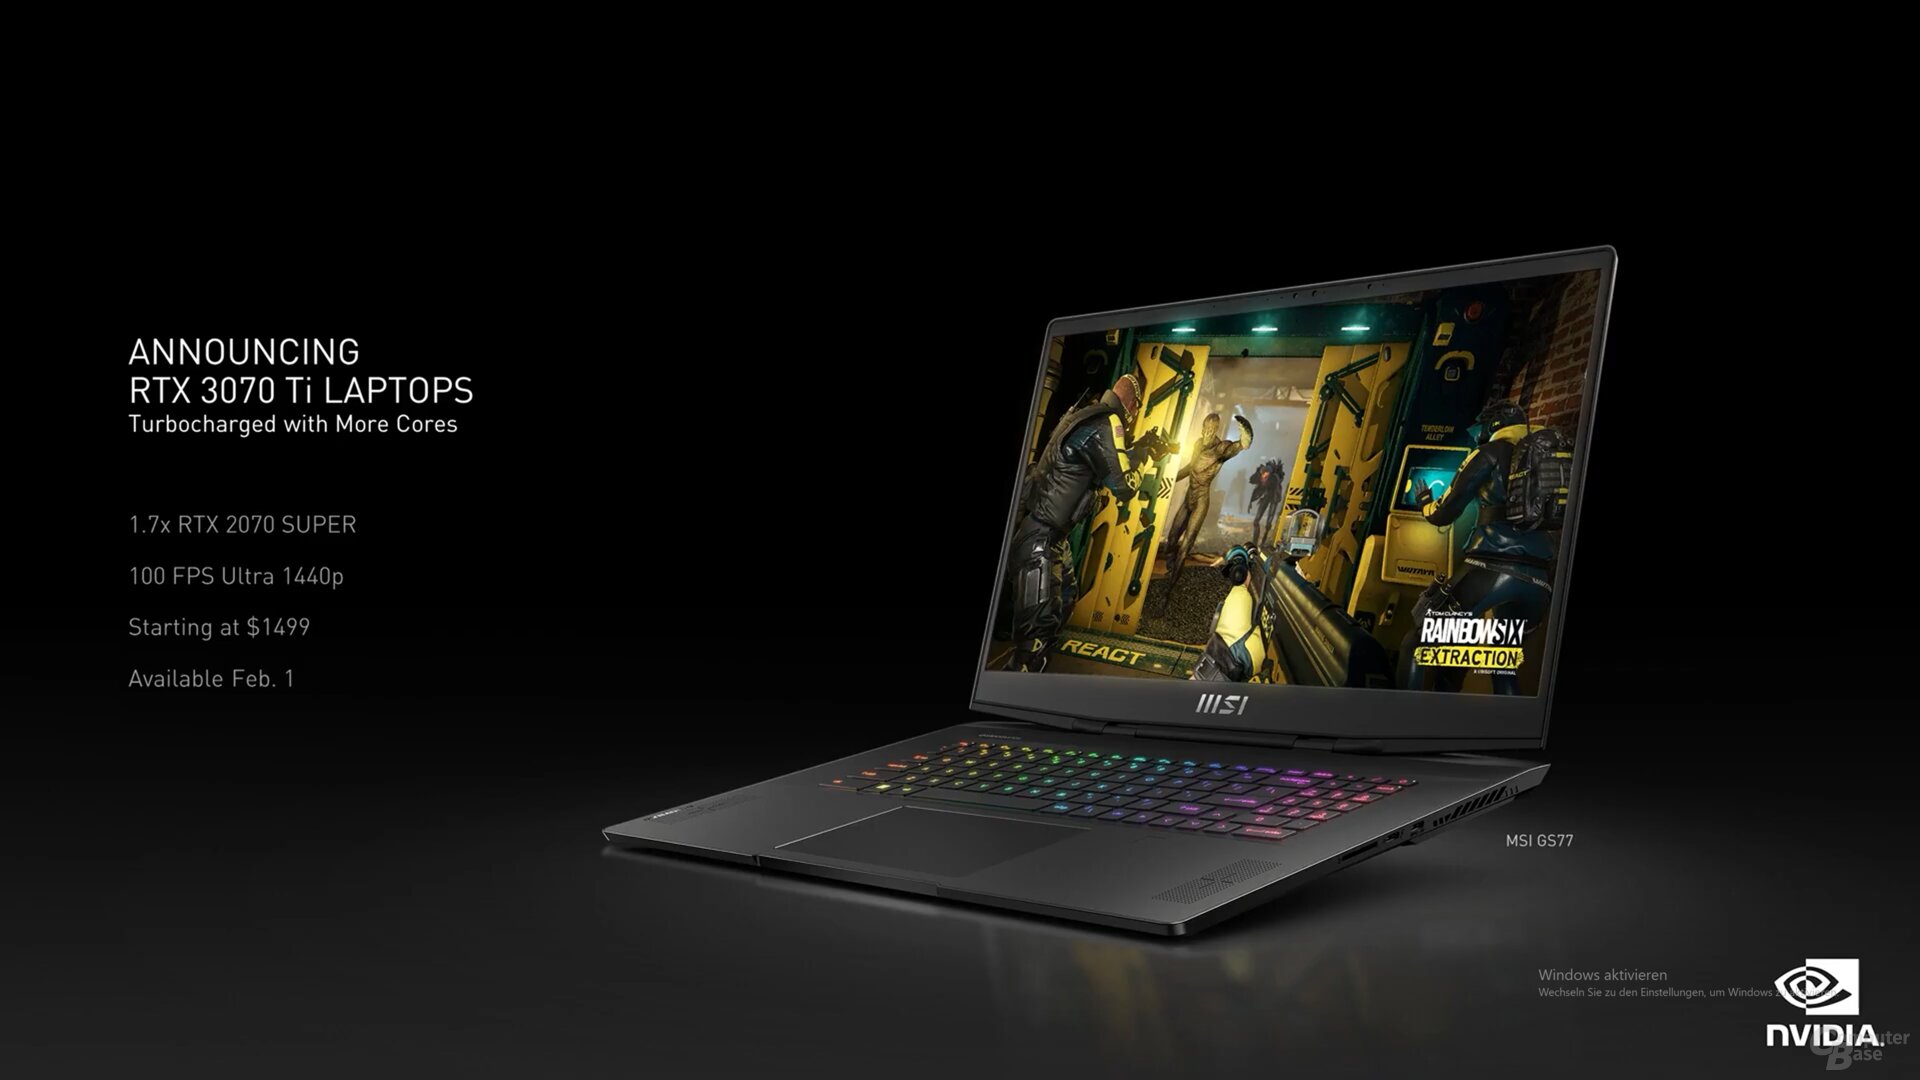 The new GeForce RTX 3070 Ti laptop GPU